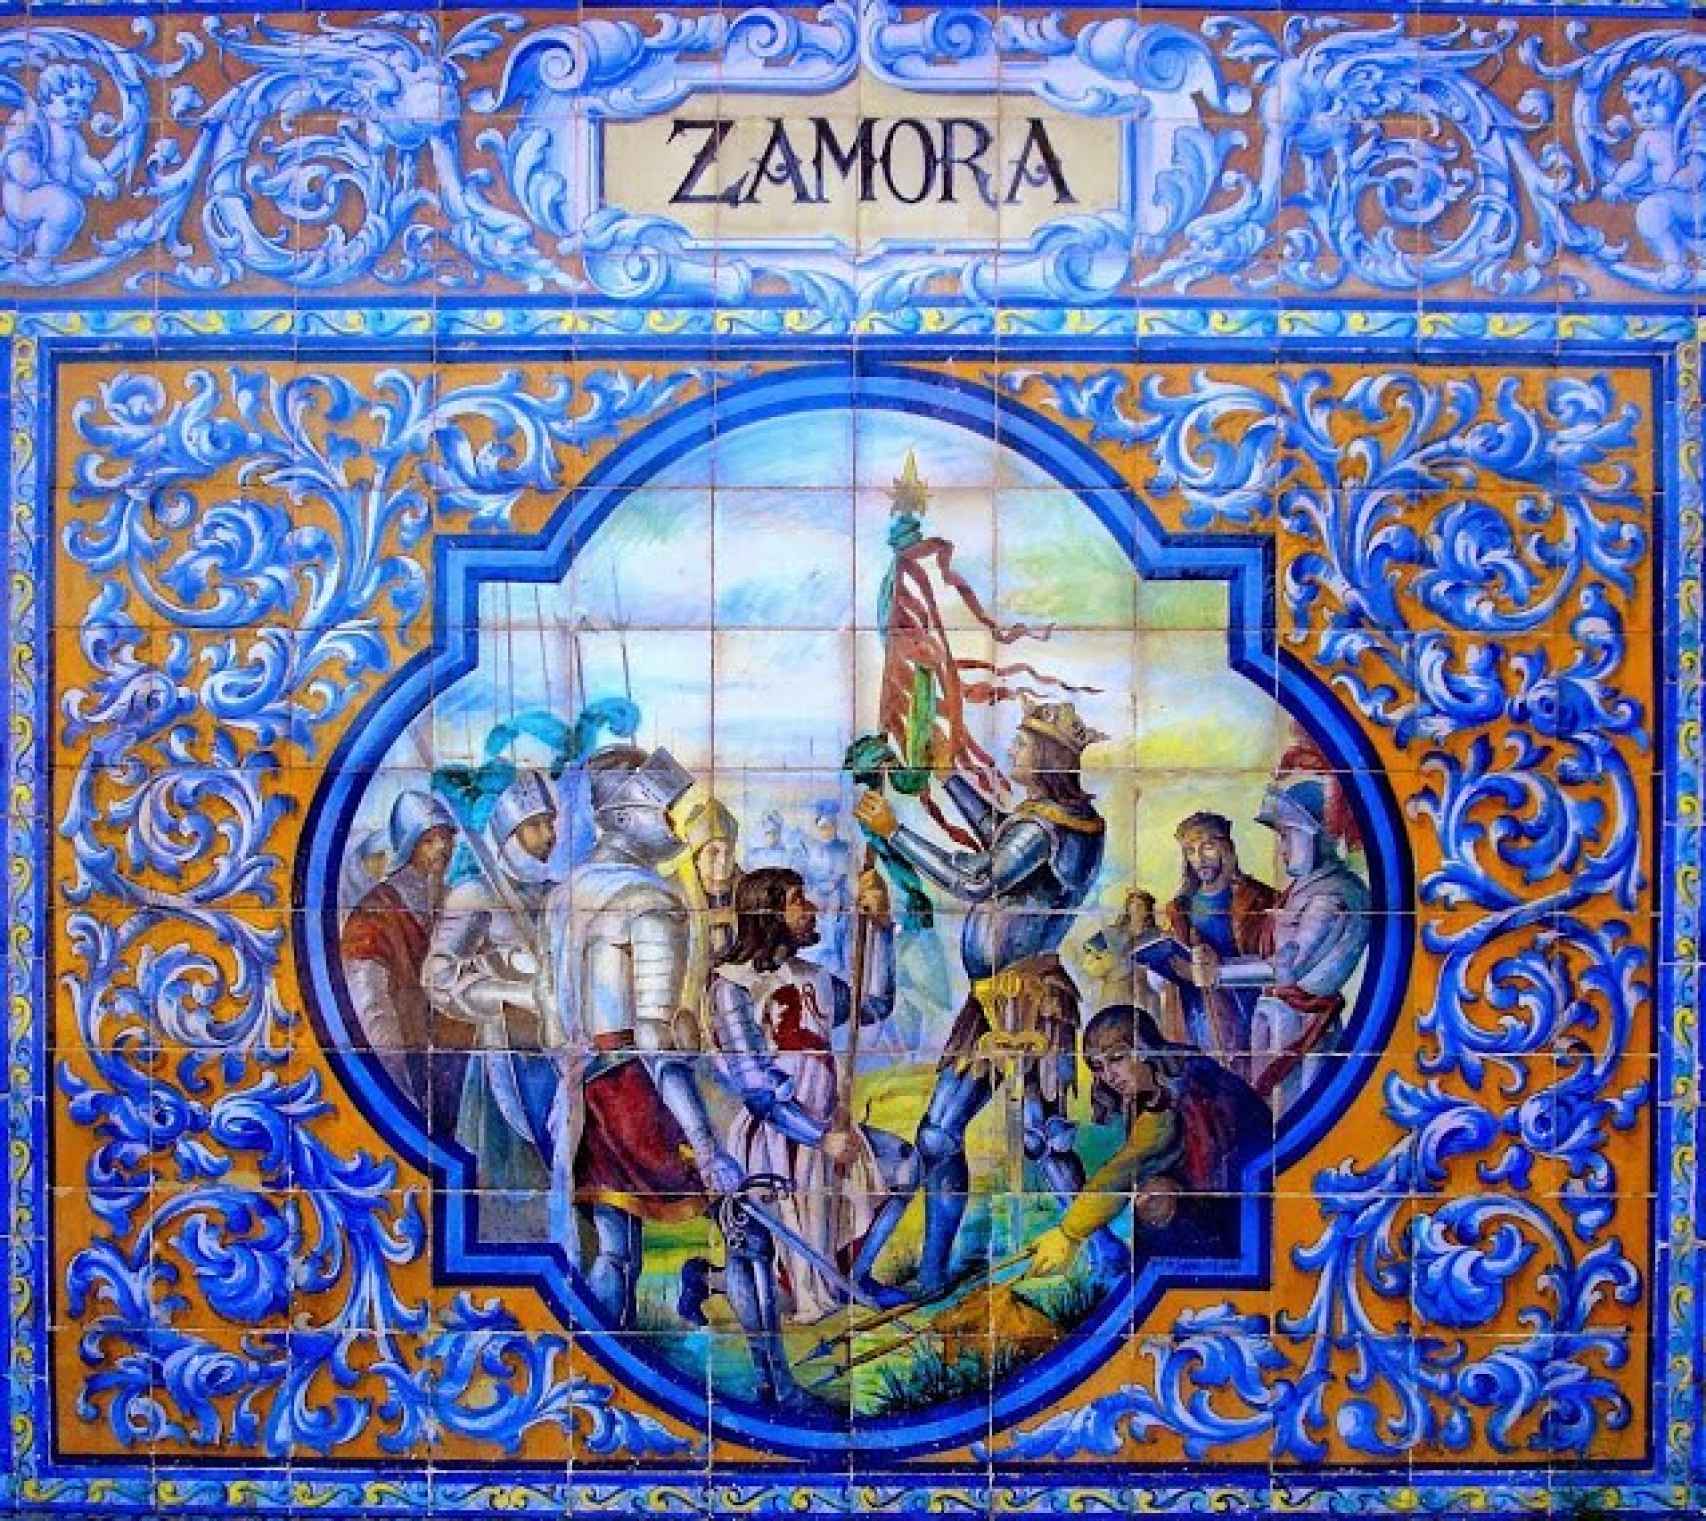 Mural en la Casa de Zamora en Sevilla que muestra el momento de puesta de la banda verde en la Seña Bemeja